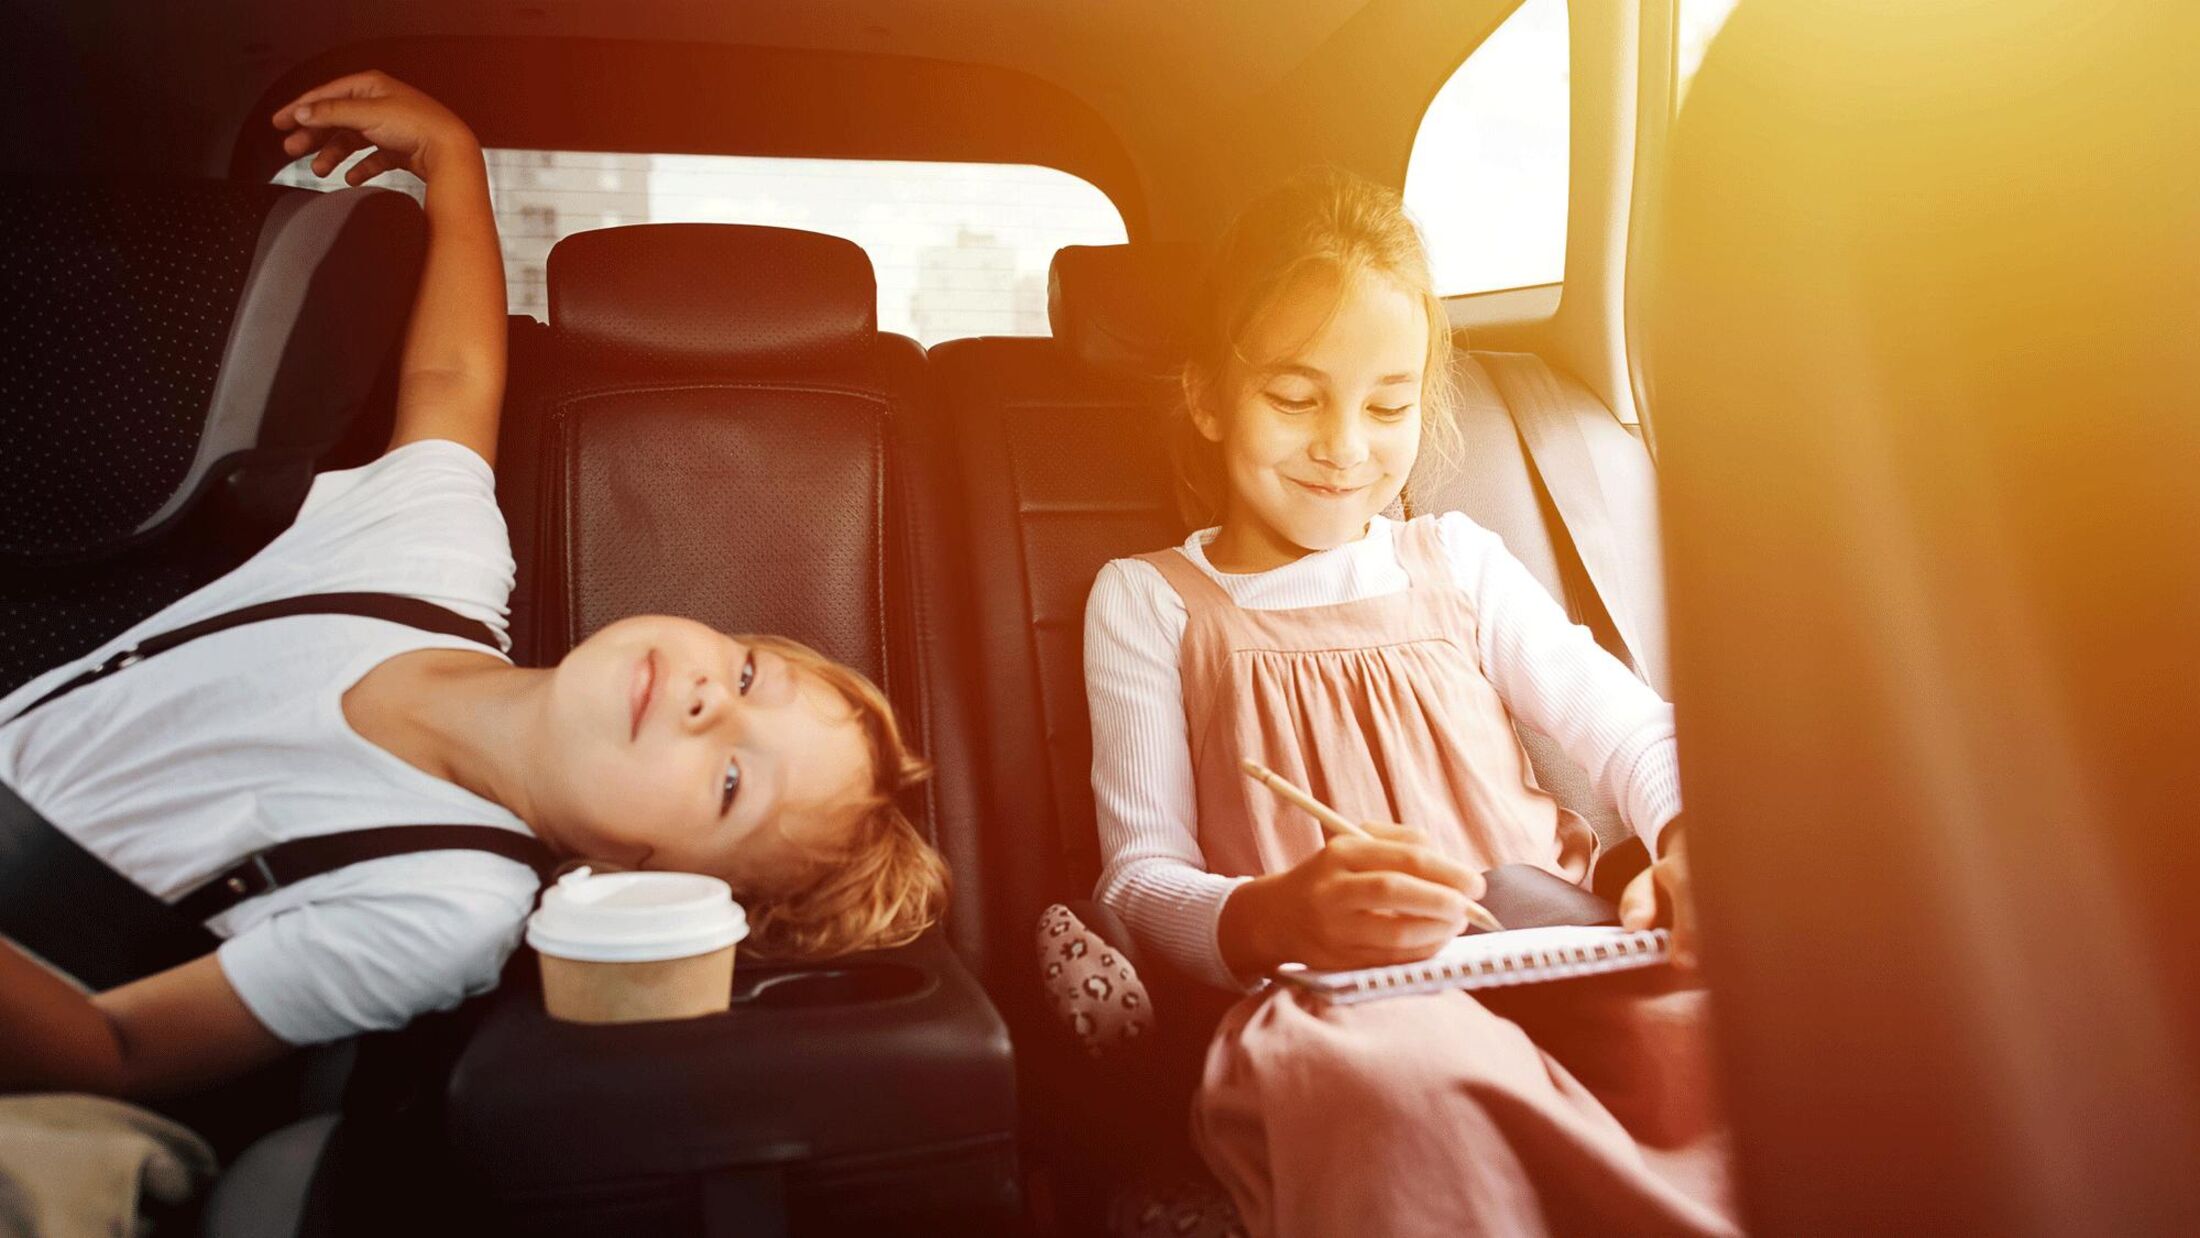 Spiele im Auto: Beschäftigungstipps für Kinder auf längeren Autofahrten